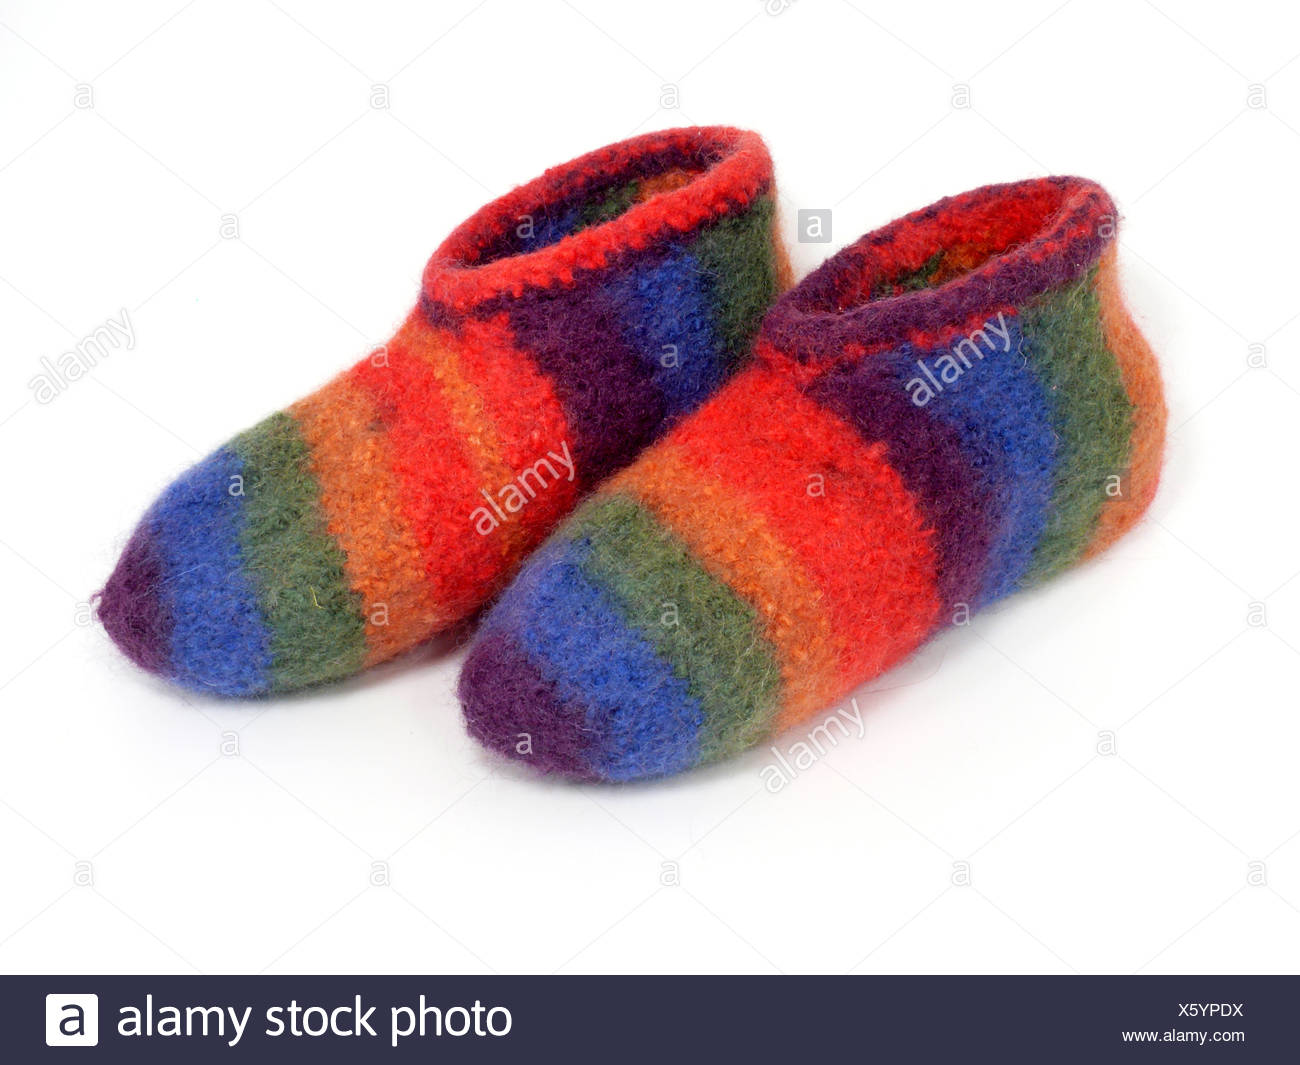 walkstoff wool slippers